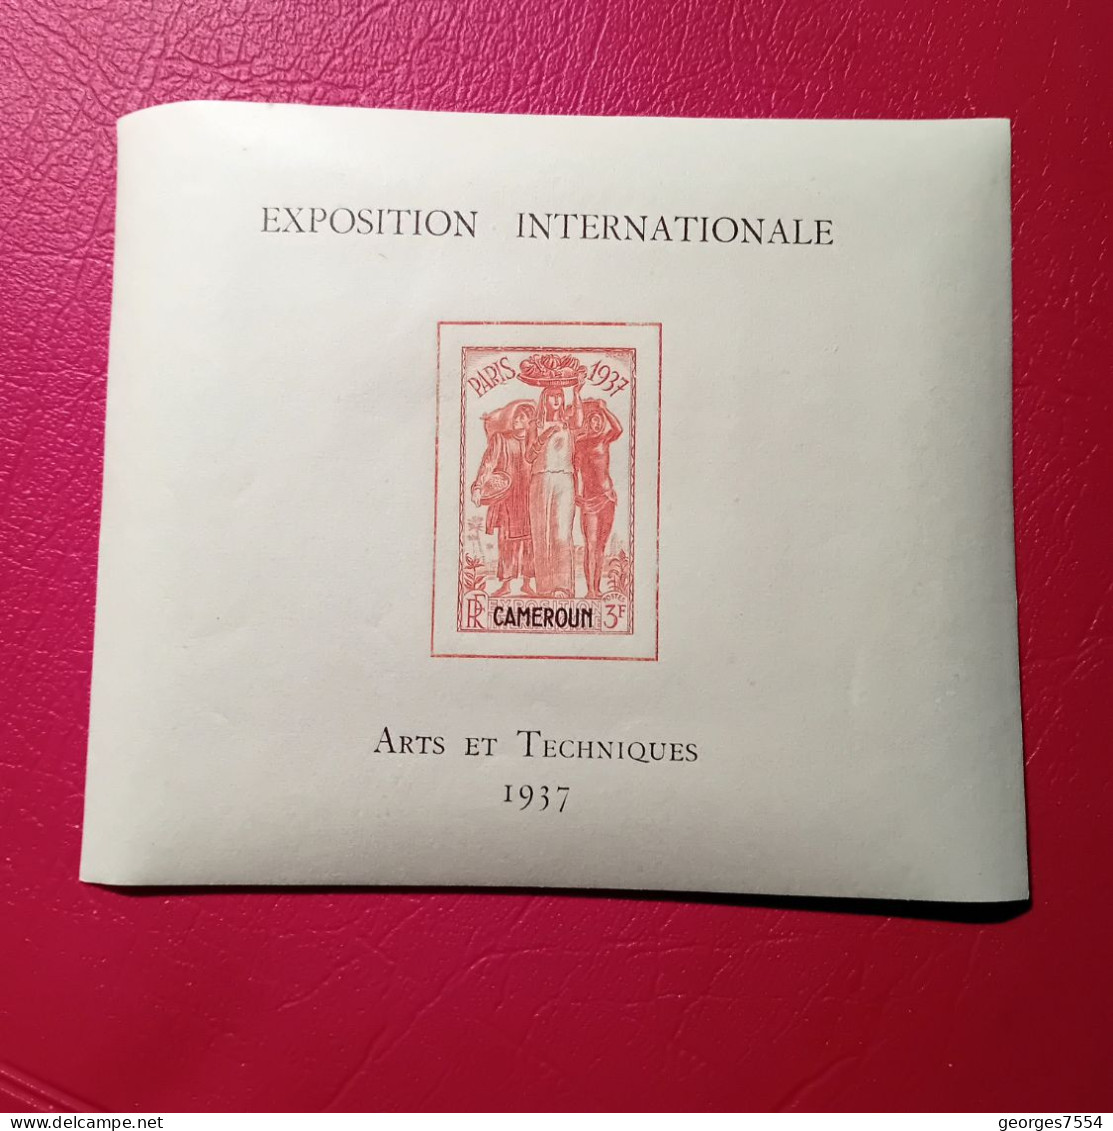 BLOC - CAMEROUN - EXPOSITION INTERNATIONALE - PARIS 1937 - ARTS ET TECHNIQUES  NEUF** - 1937 Exposition Internationale De Paris